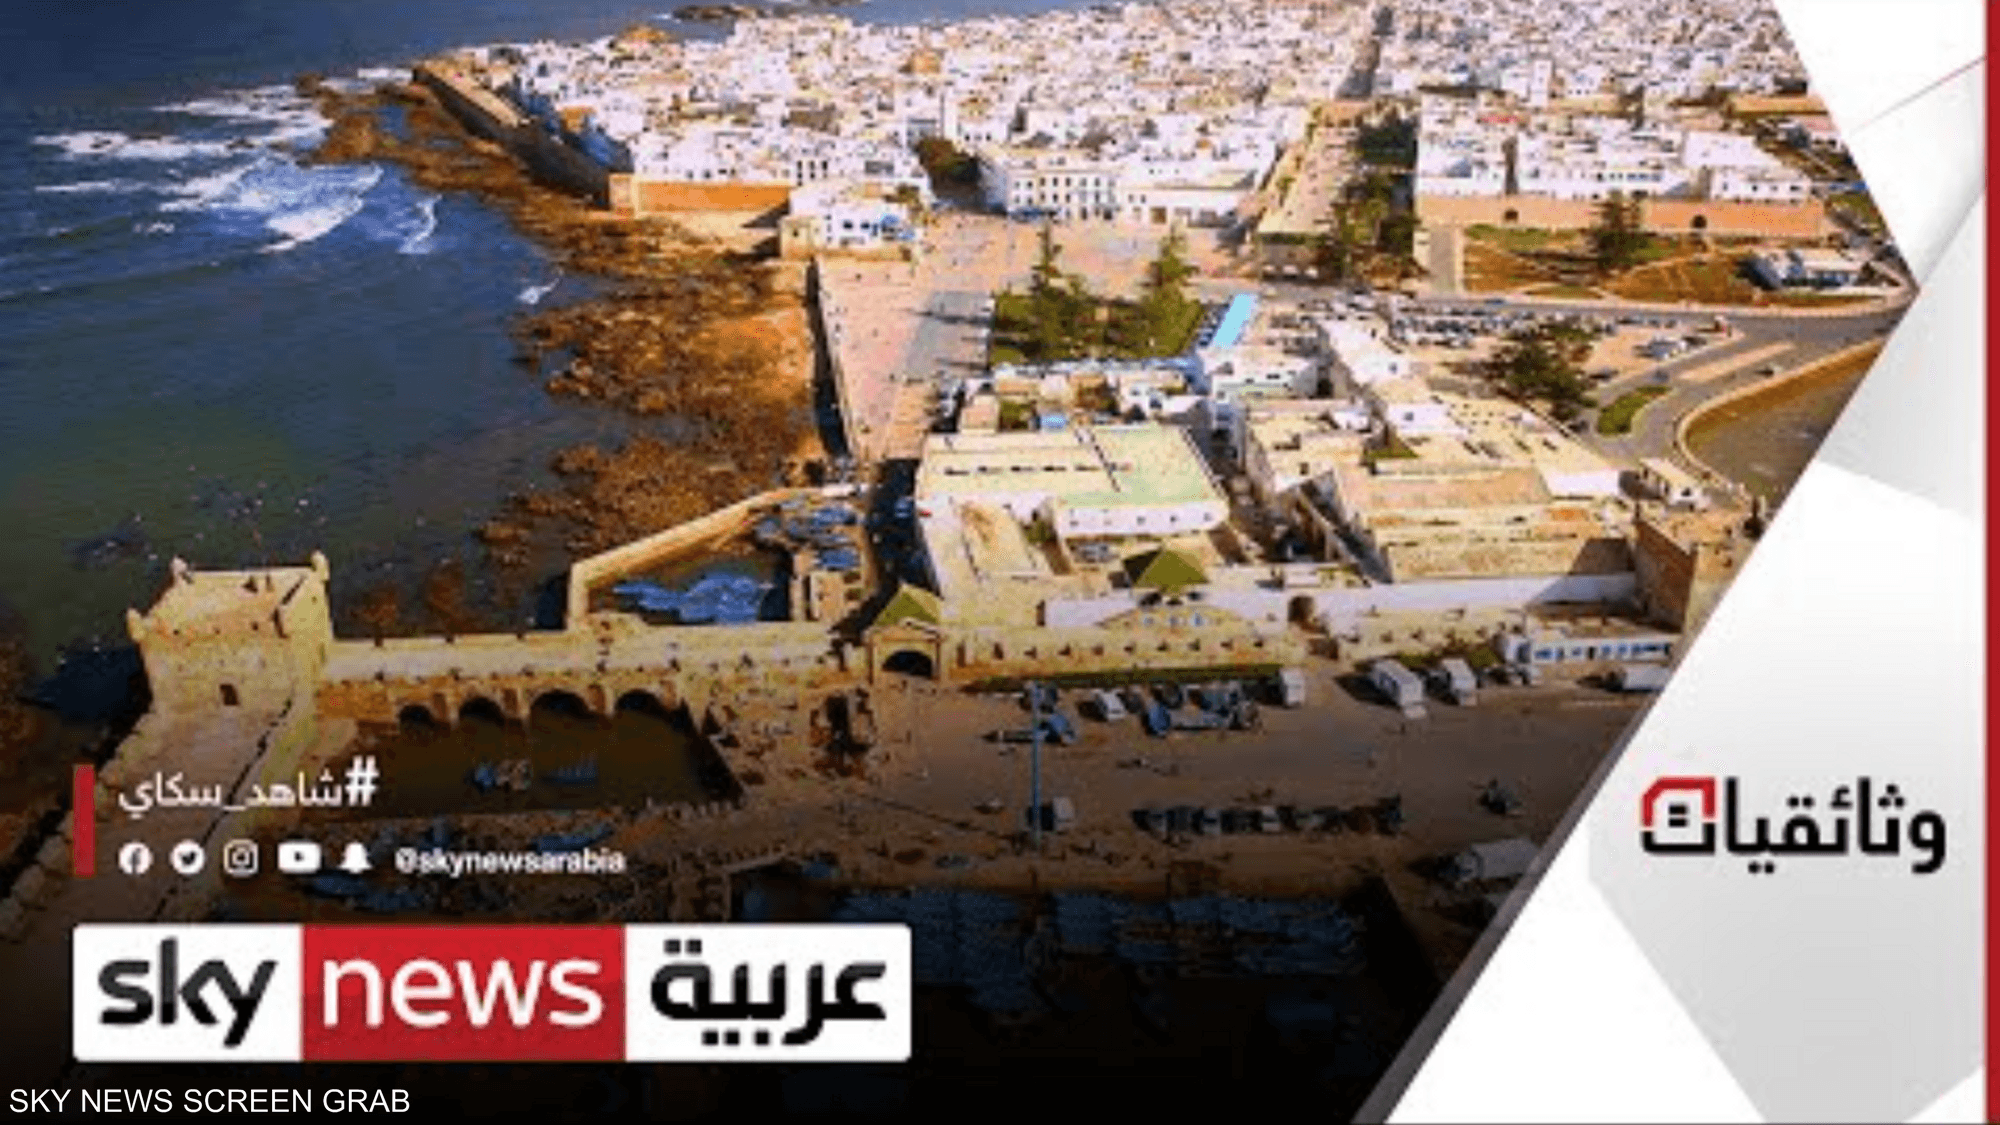 الصويرة.. مدينة التسامح والتعايش الديني والثقافي في المغرب